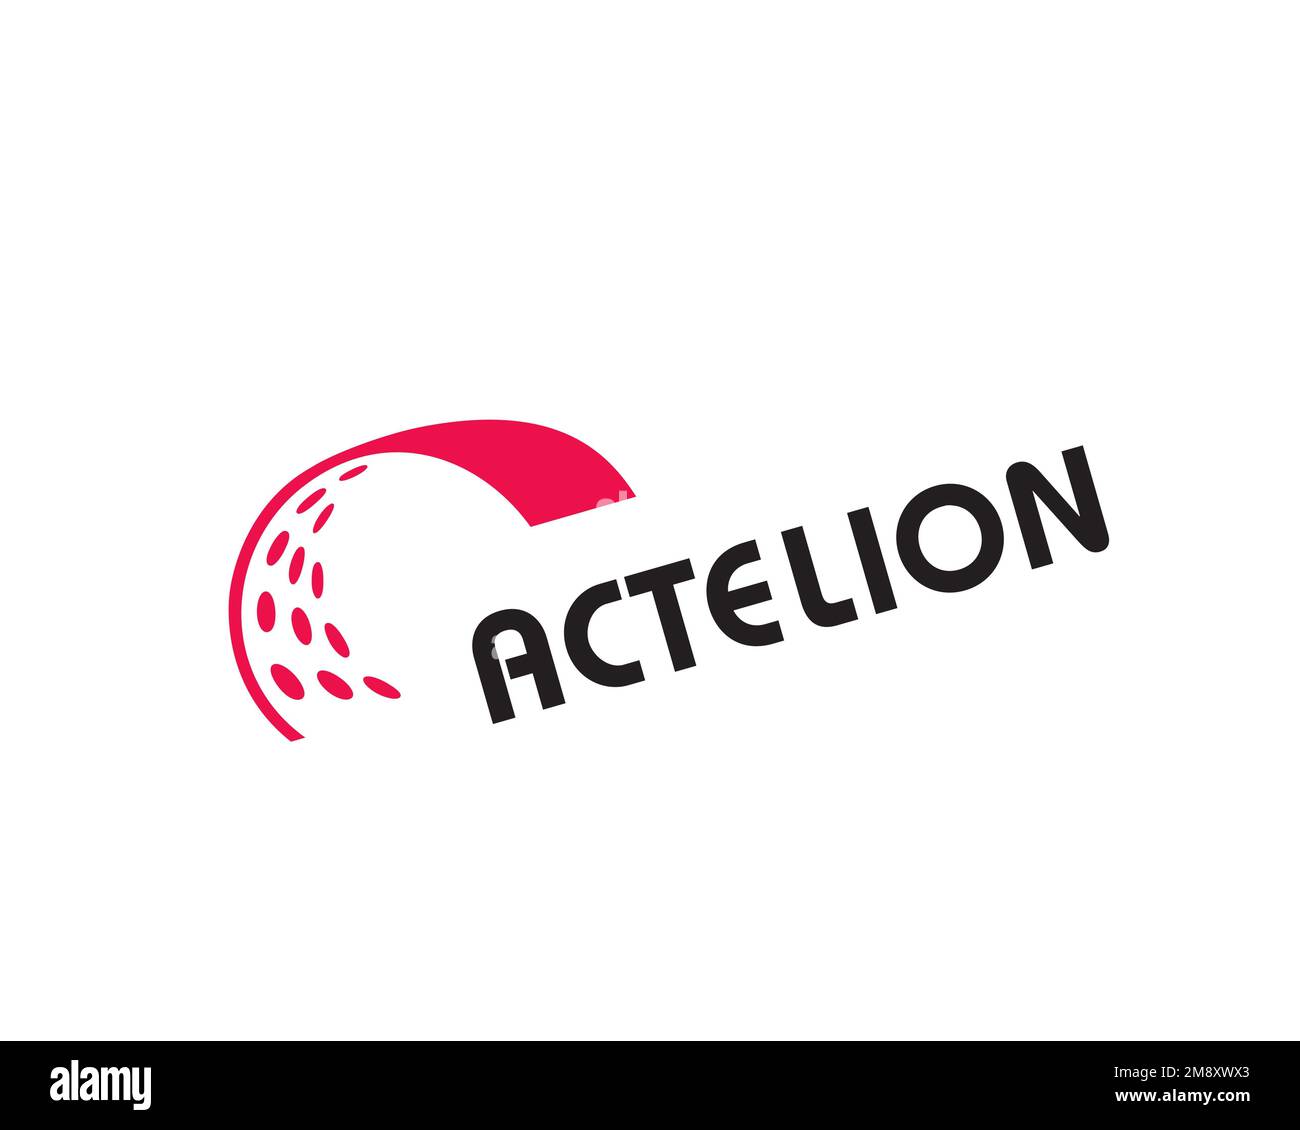 Actelion, rotated logo, white background Stock Photo